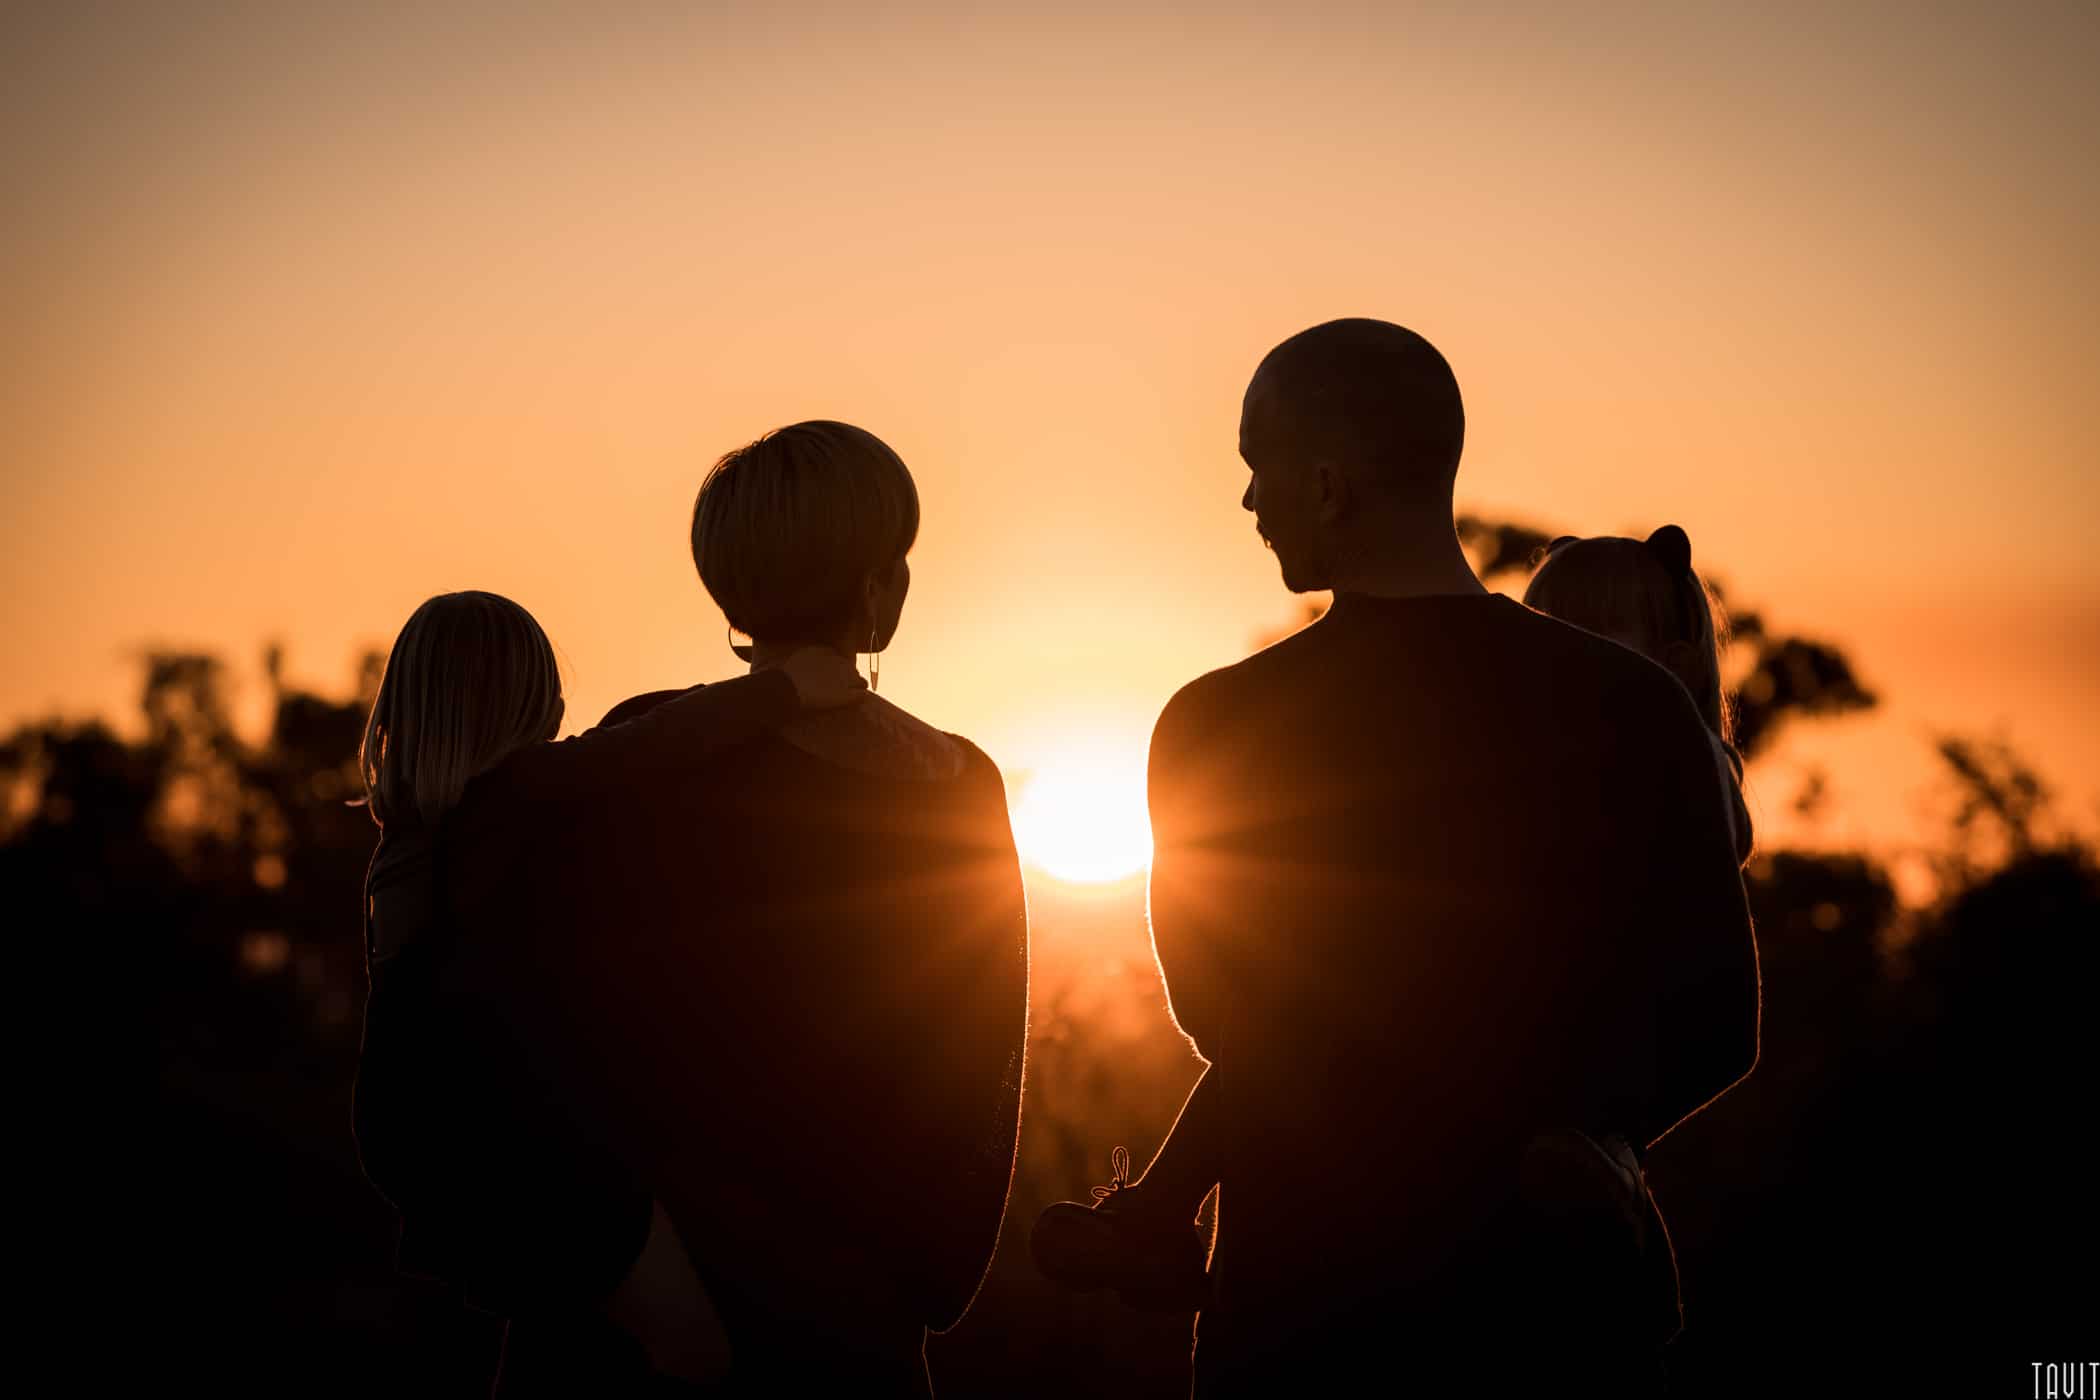 Artistic family silhouette sunset shot